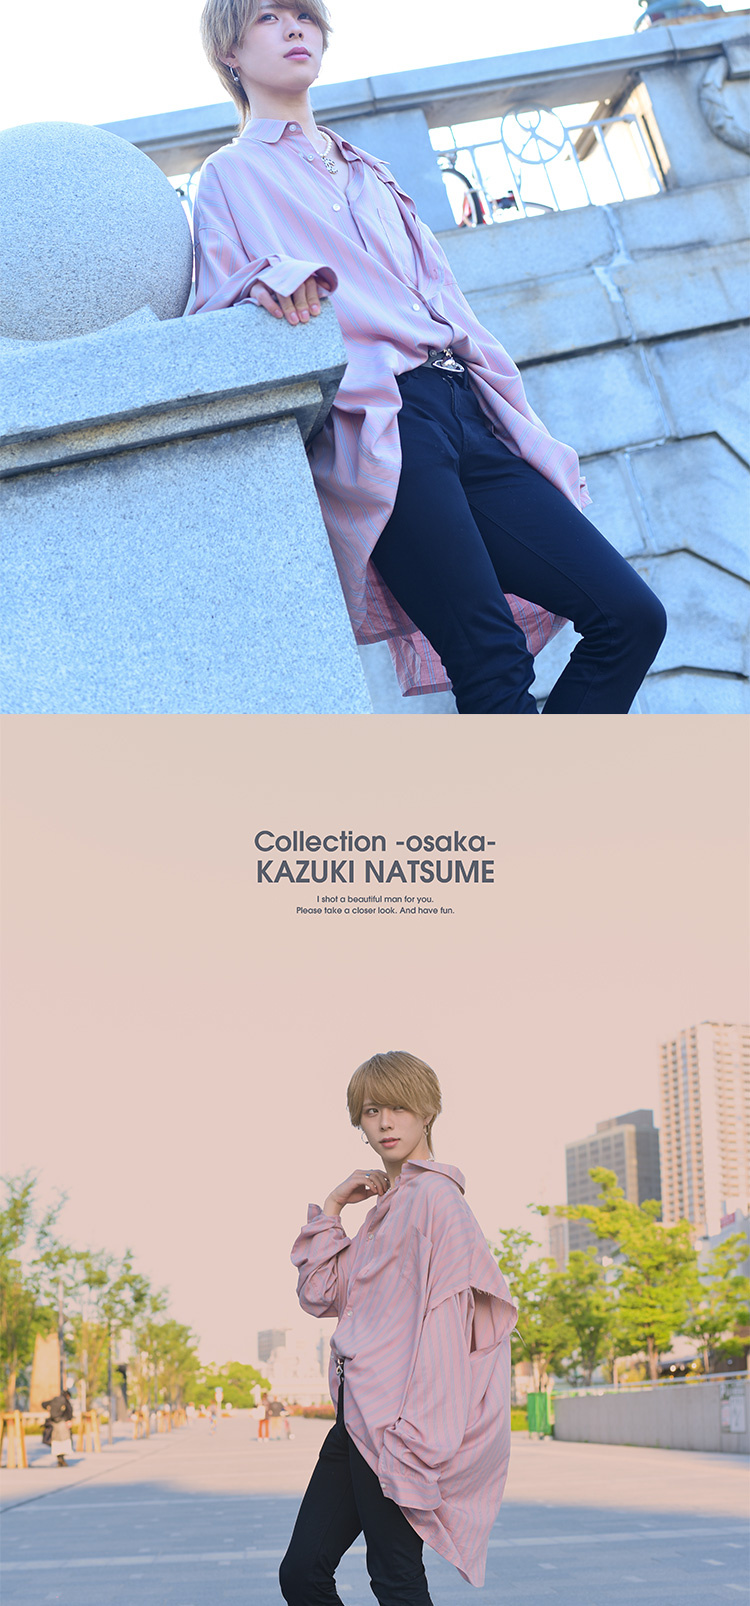 大阪ホストクラブ Collection -osaka- 夏目 一希